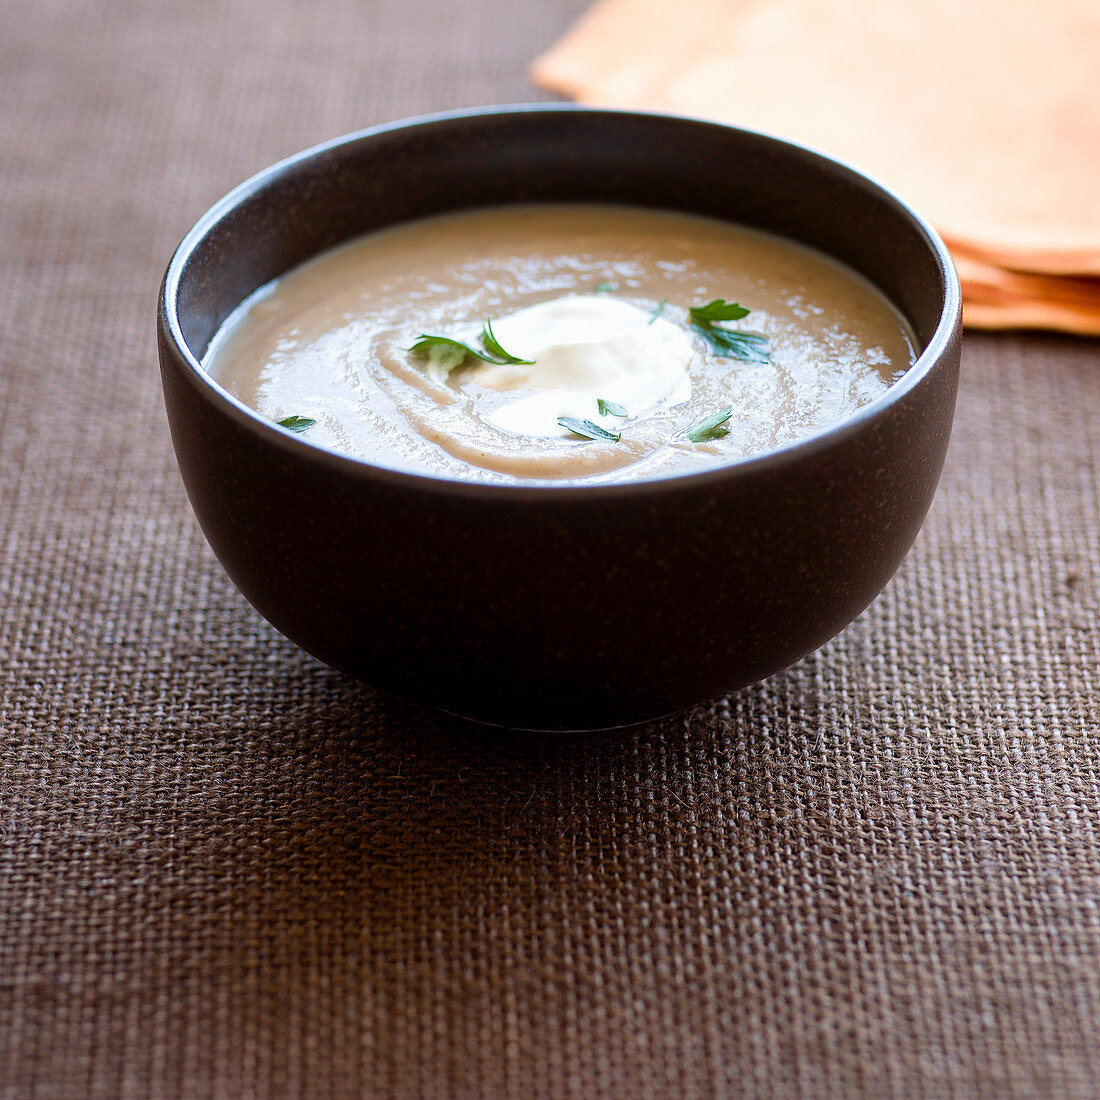 Chestnut soup with crème fraîche